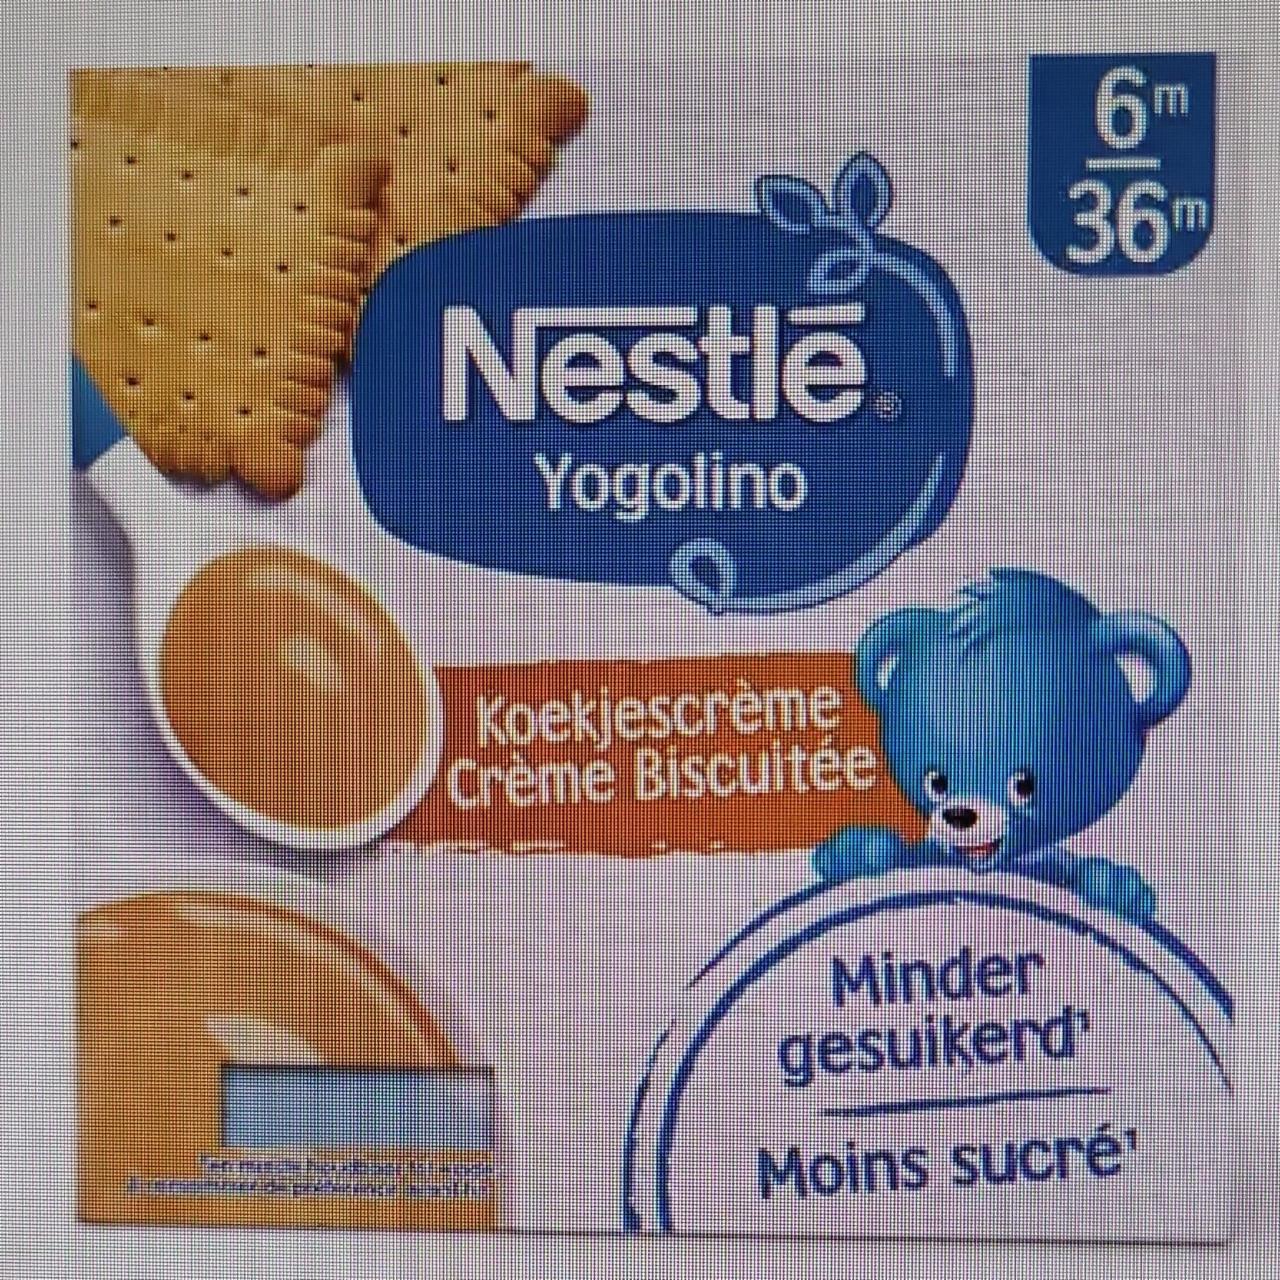 Fotografie - Koekjescréme Créme Biscuitét Nestlé